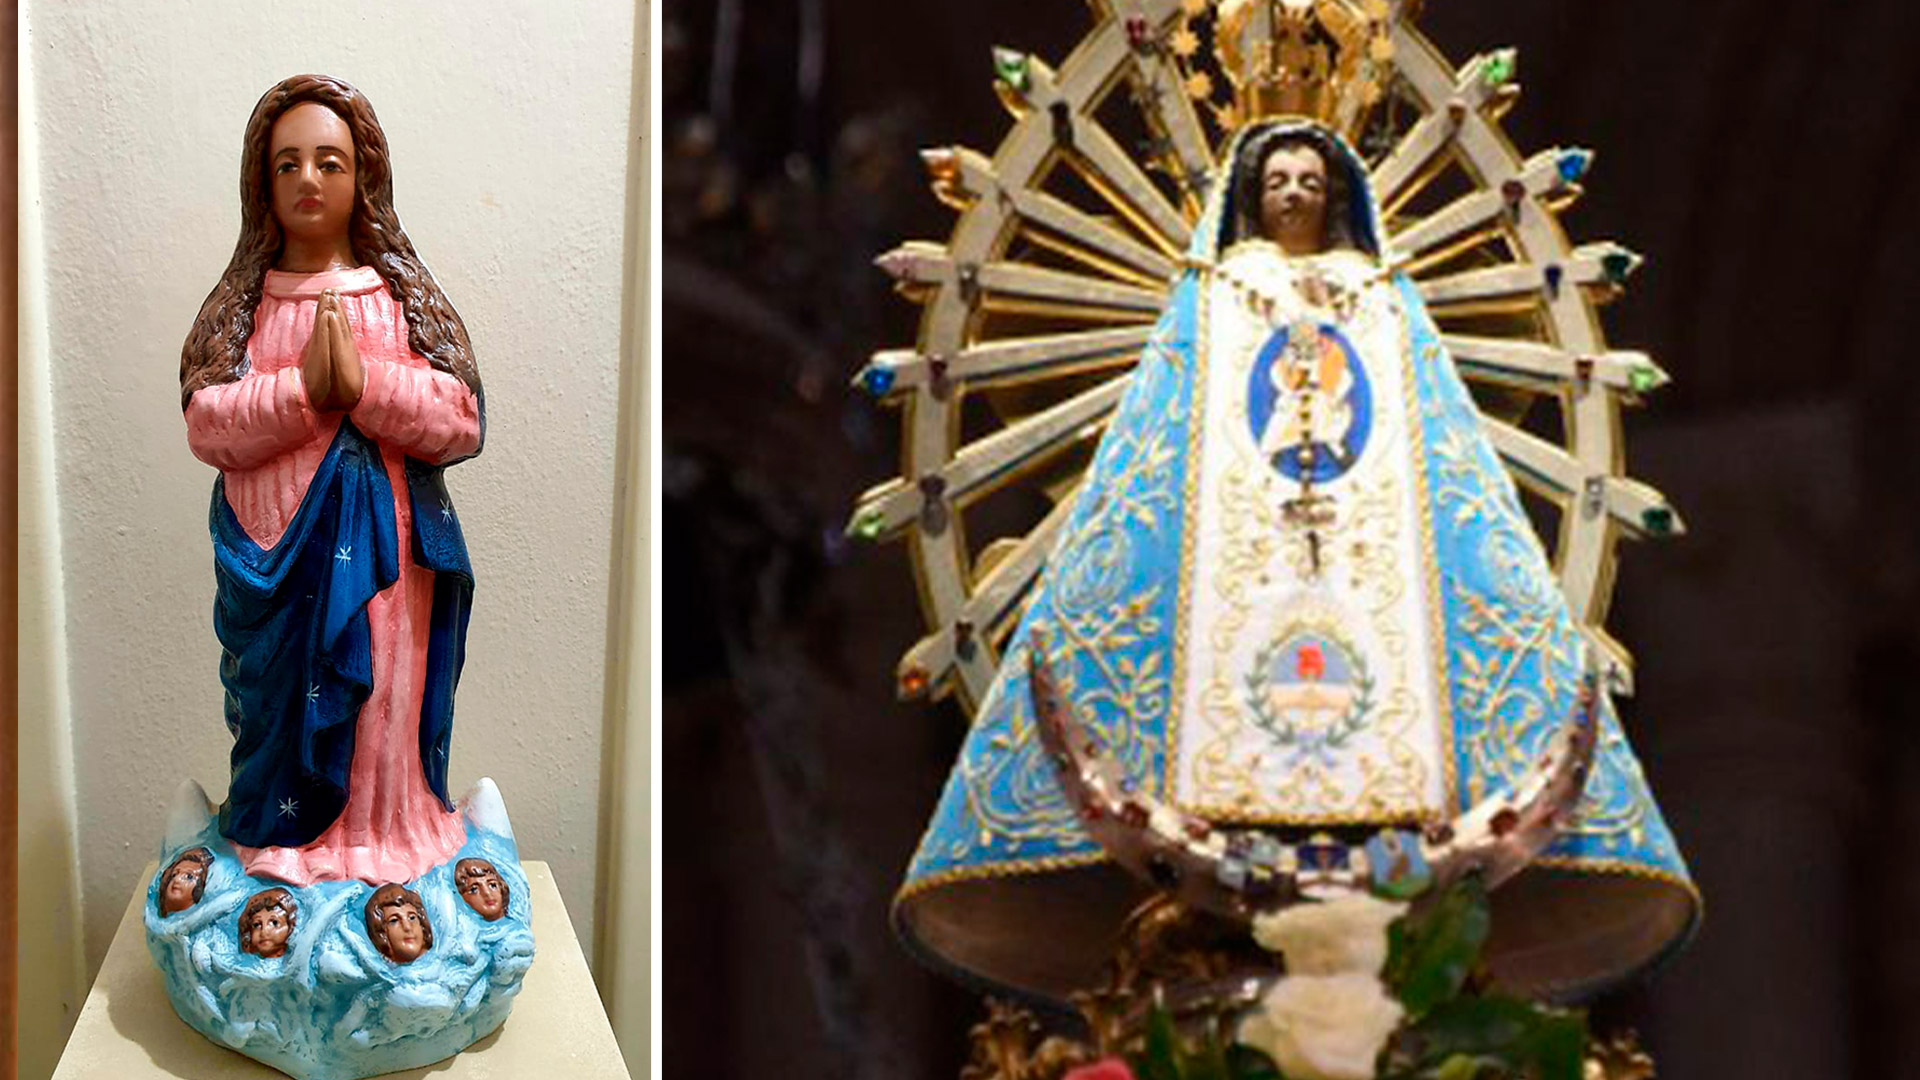 Una réplica de la imagen original de la Virgen de La Inmaculada Concepción que se envió desde Brasil, y a la derecha, la actual Virgen de Luján